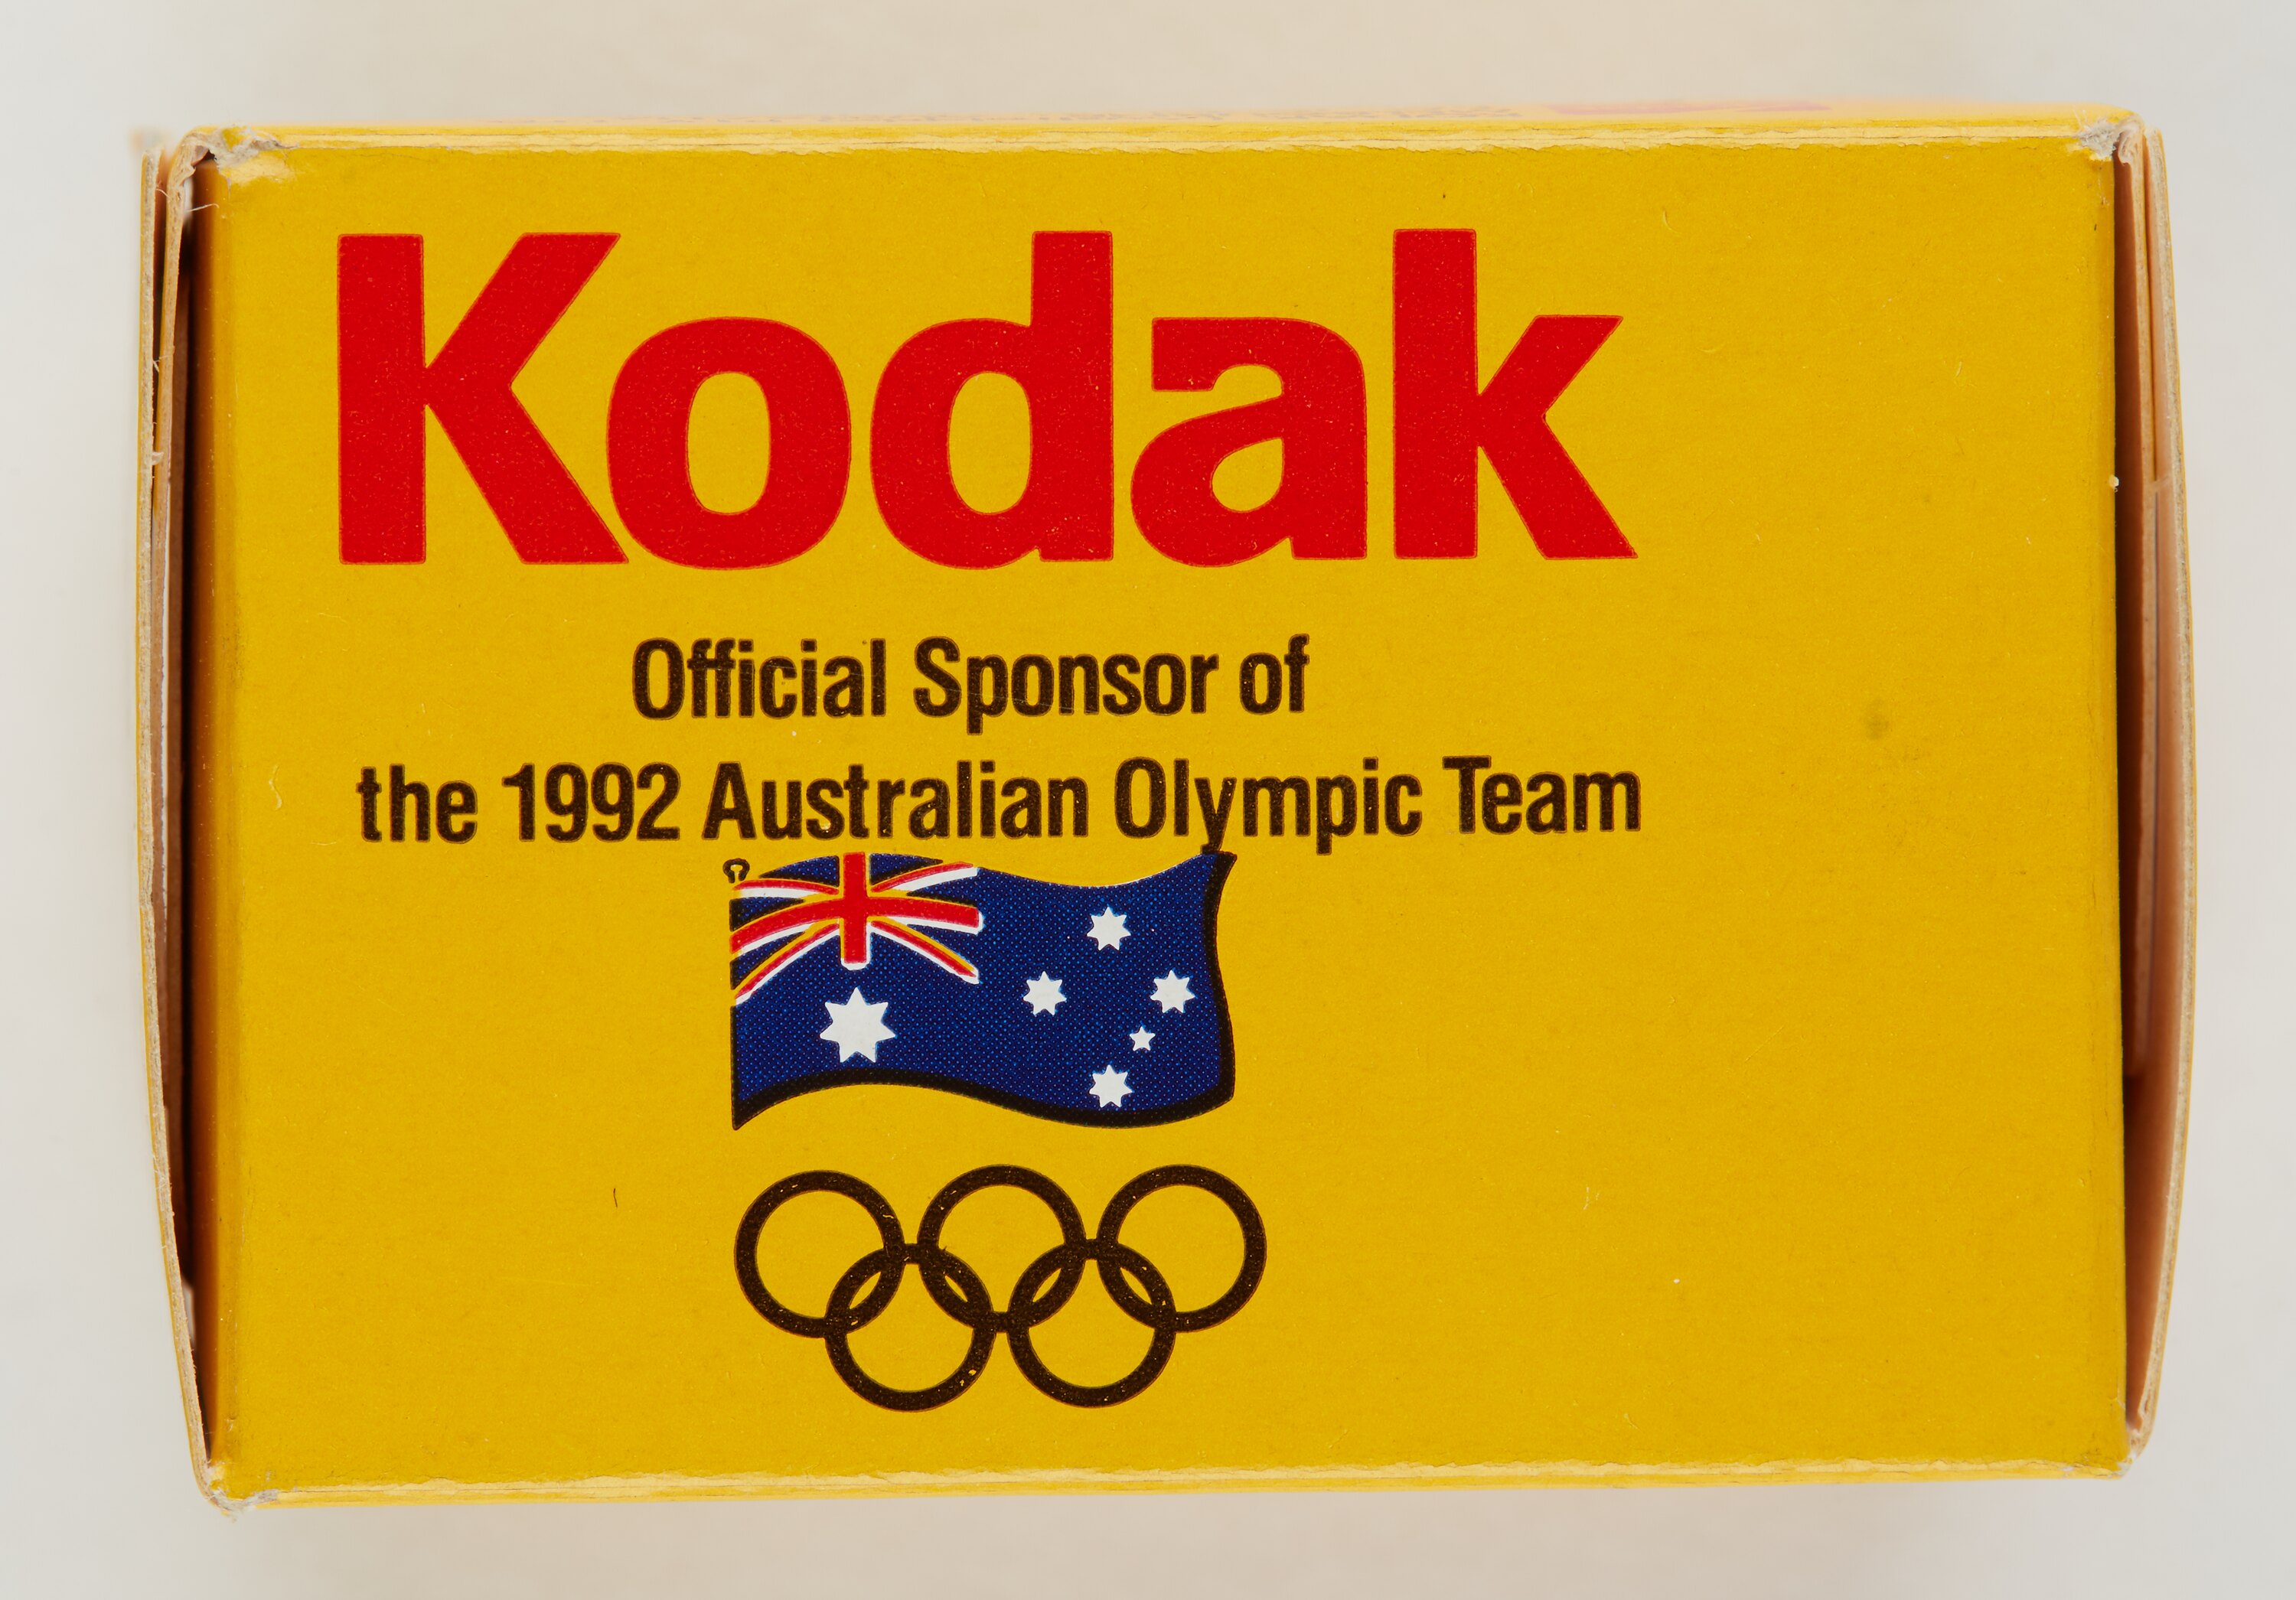 KODAK Official Imaging Sponsor of 1996 Olympic Games ATLANTA 1996 PIN'S JO 